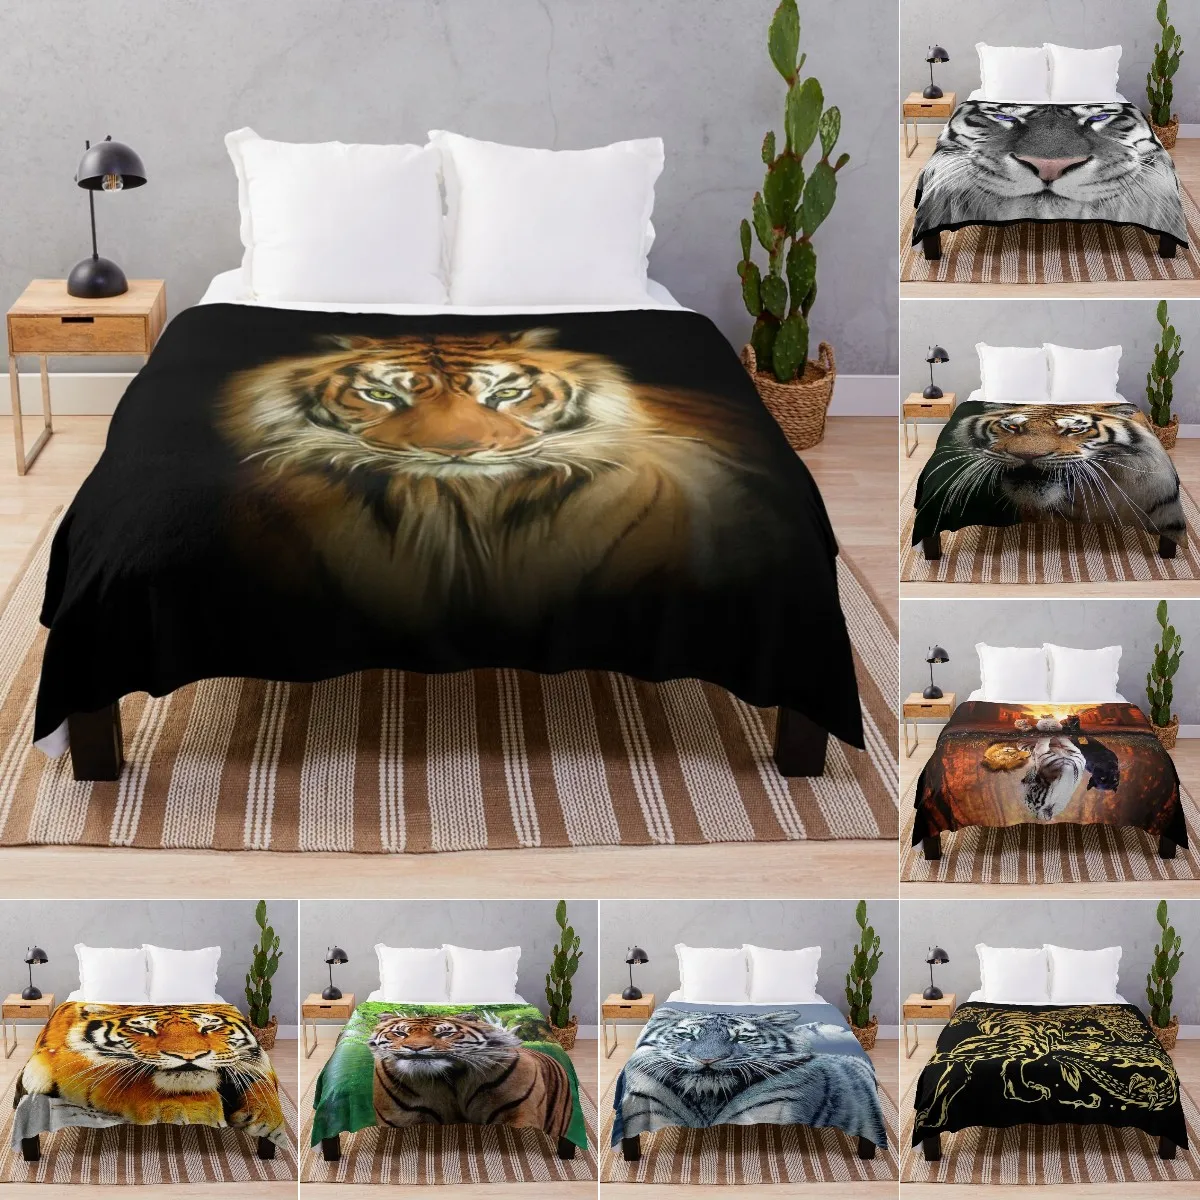 

Одеяло в виде тигра, супермягкое теплое флисовое легкое фланелевое одеяло с животными, мягкое плюшевое постельное белье, подарок